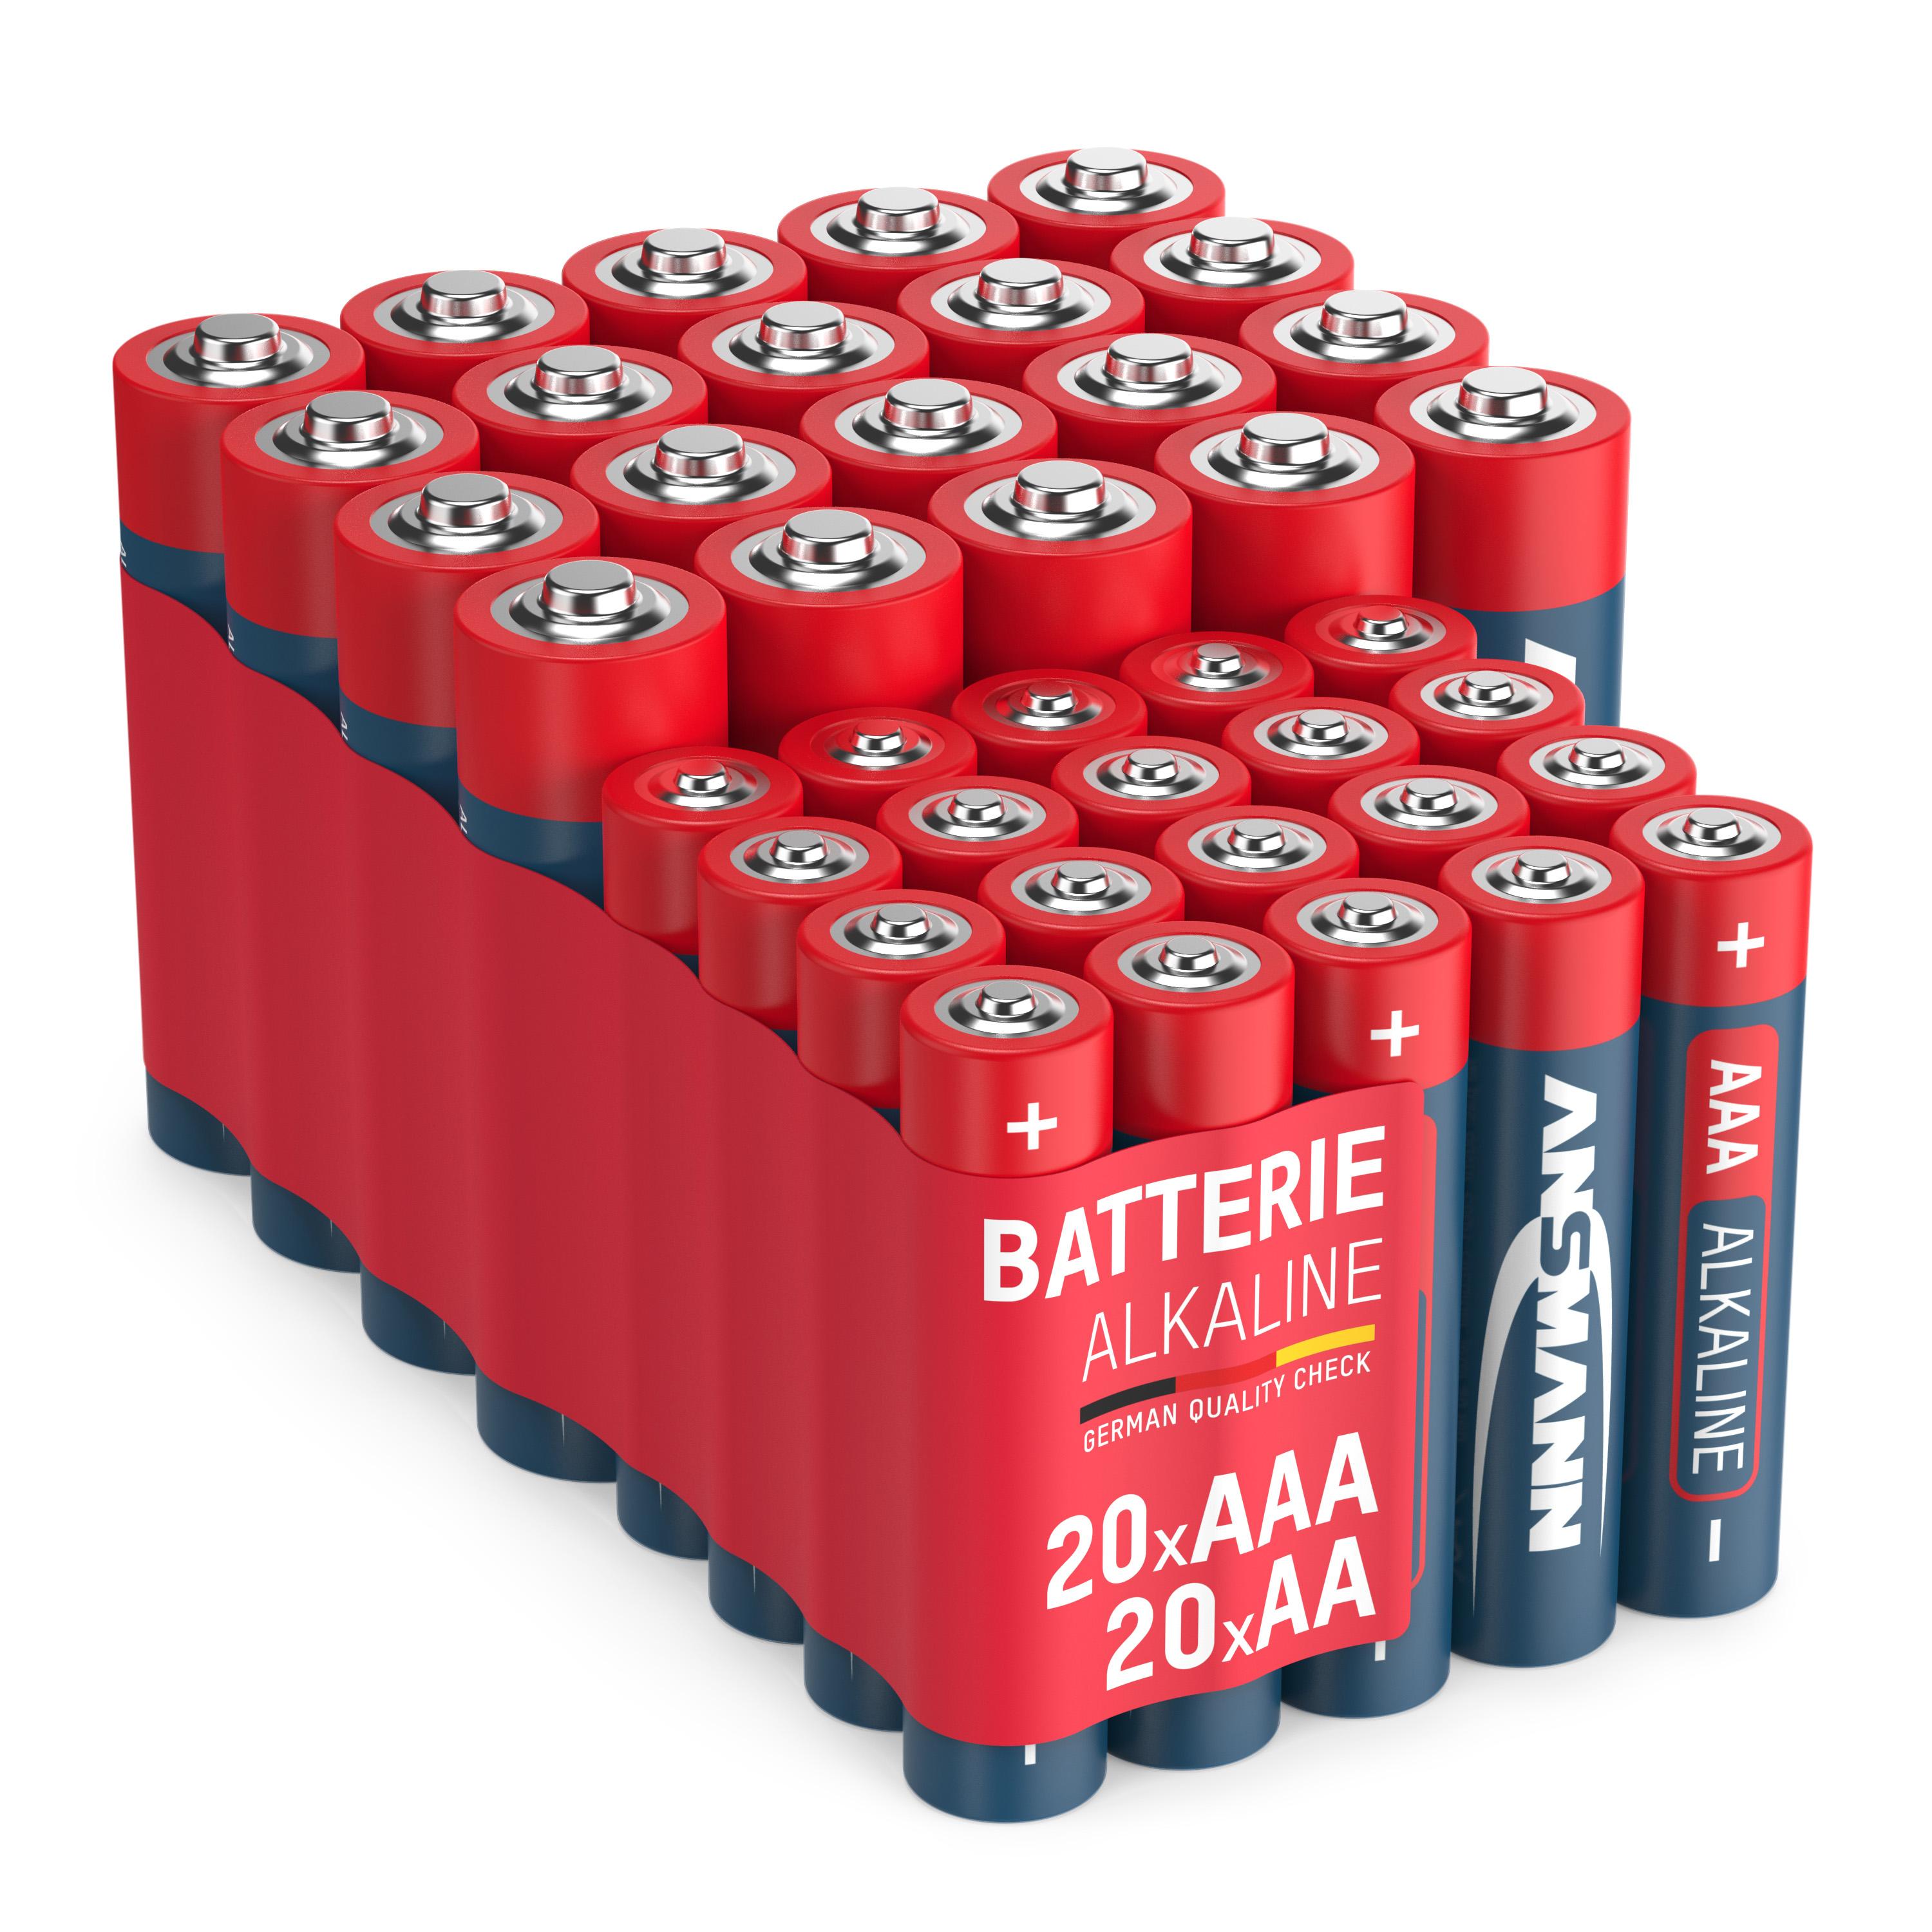 ANSMANN 20x Alkaline 1.5 Volt LR6 + NiMH AAA Batterie, 20x Mignon Sparpack AA Mignon LR03 AA Micro (Nickel-Metallhydrid),